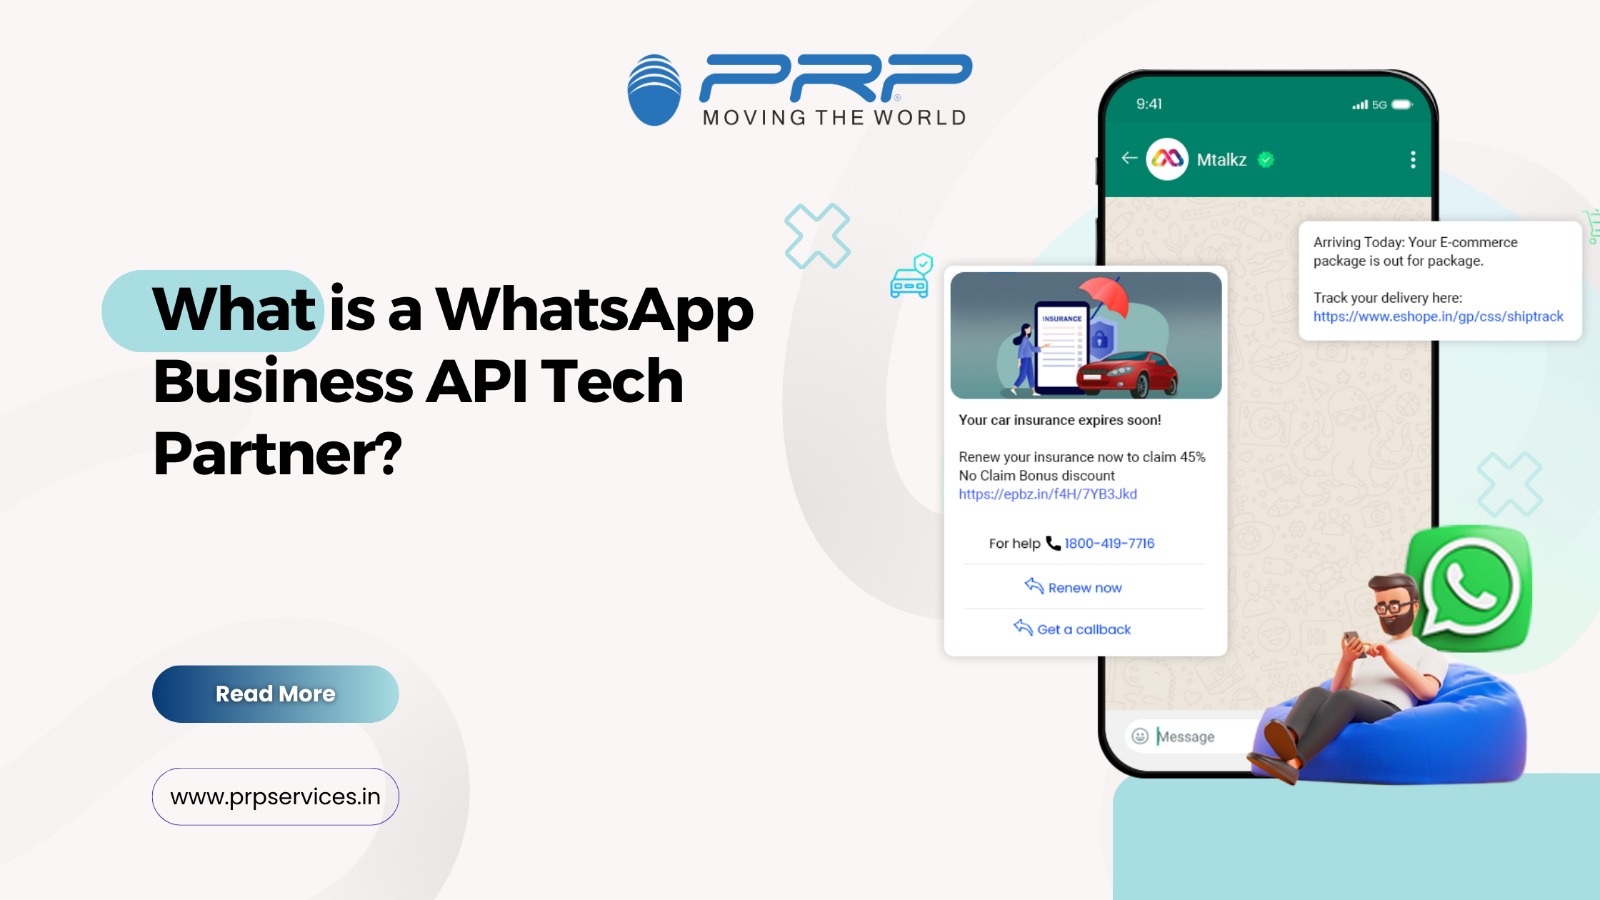 whatsapp business api tech partner